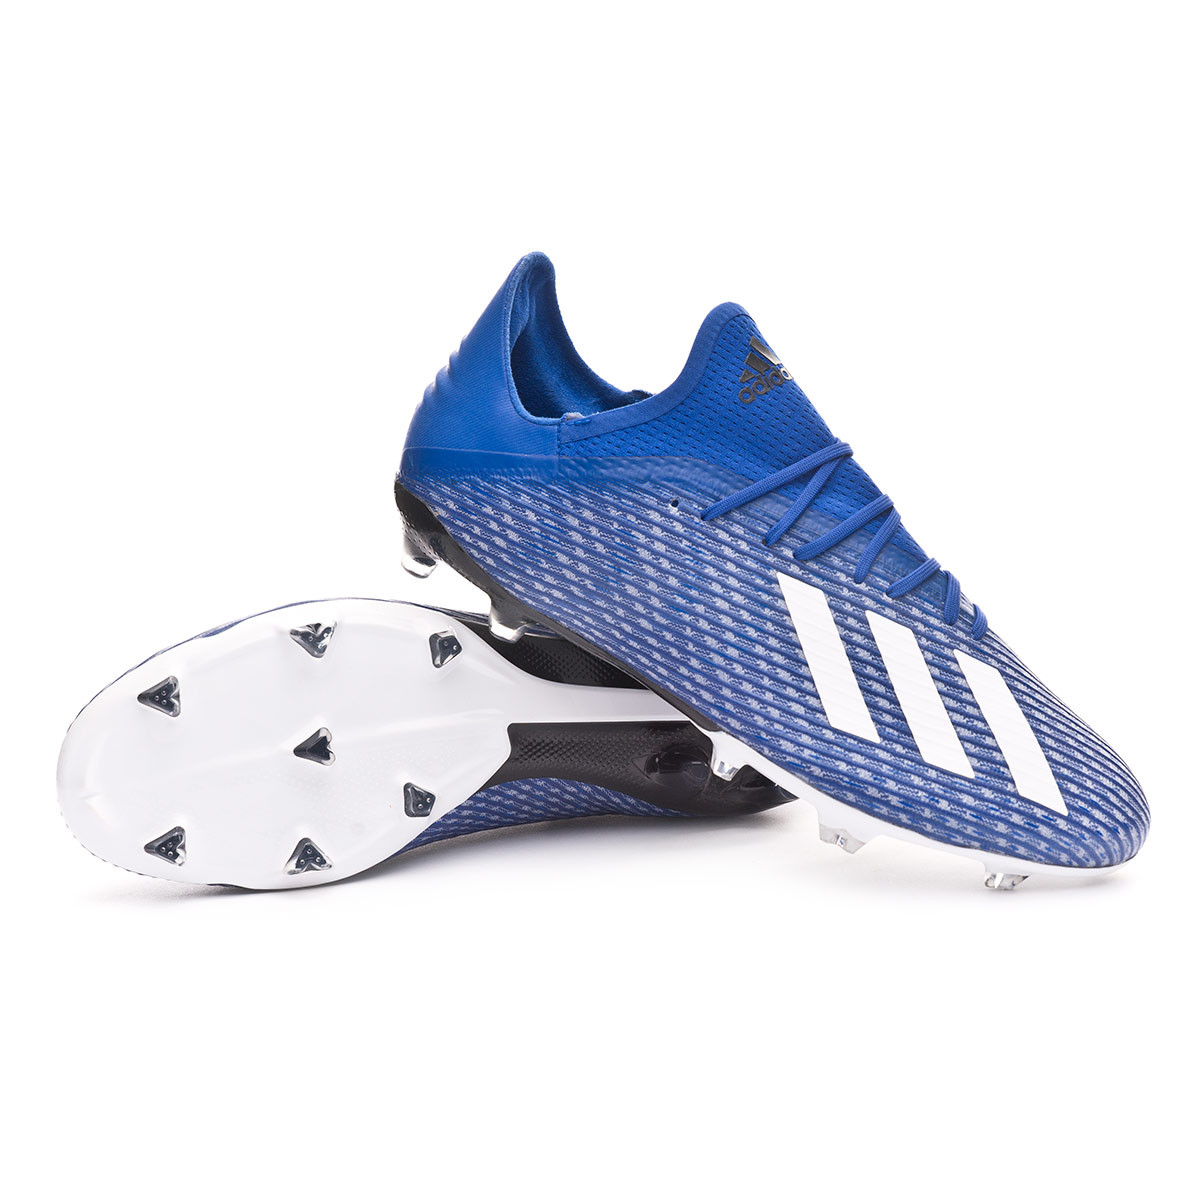 Football Boots adidas X 19.2 FG Team royal blue-White-Black - Football  store Fútbol Emotion